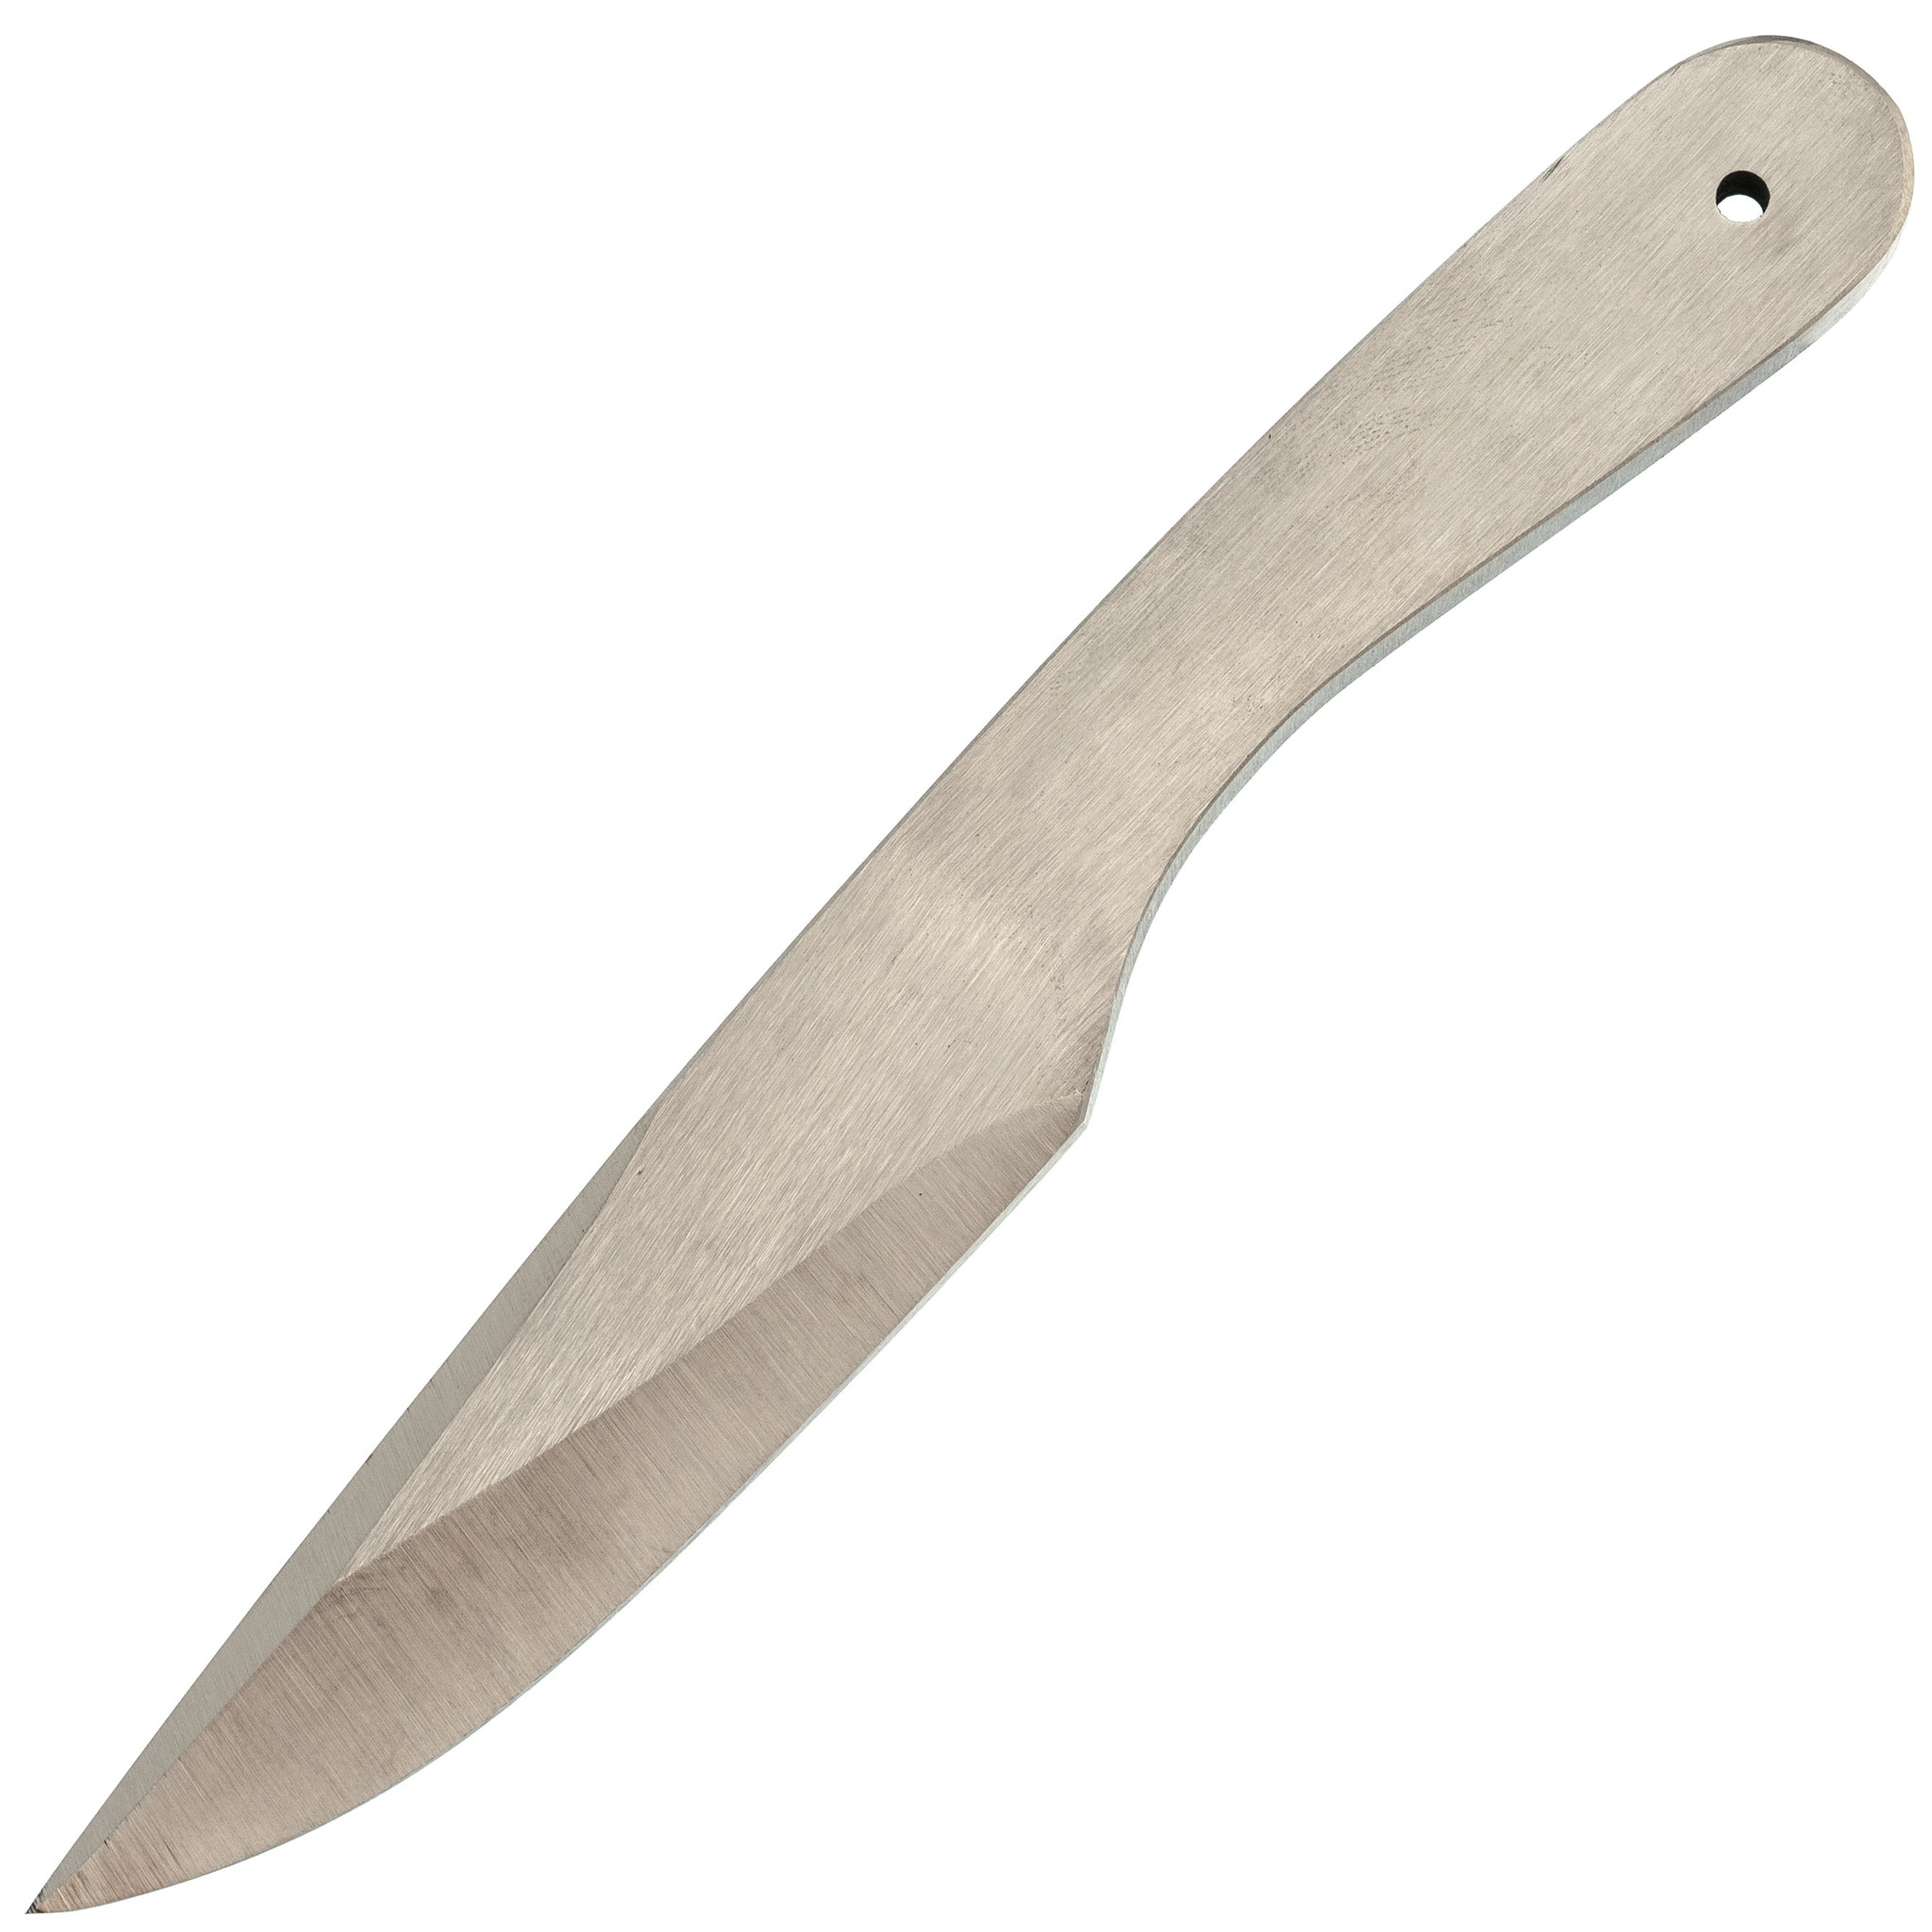 Спортивный нож Осетр мини, Коваль, сталь 65Г - фото 1